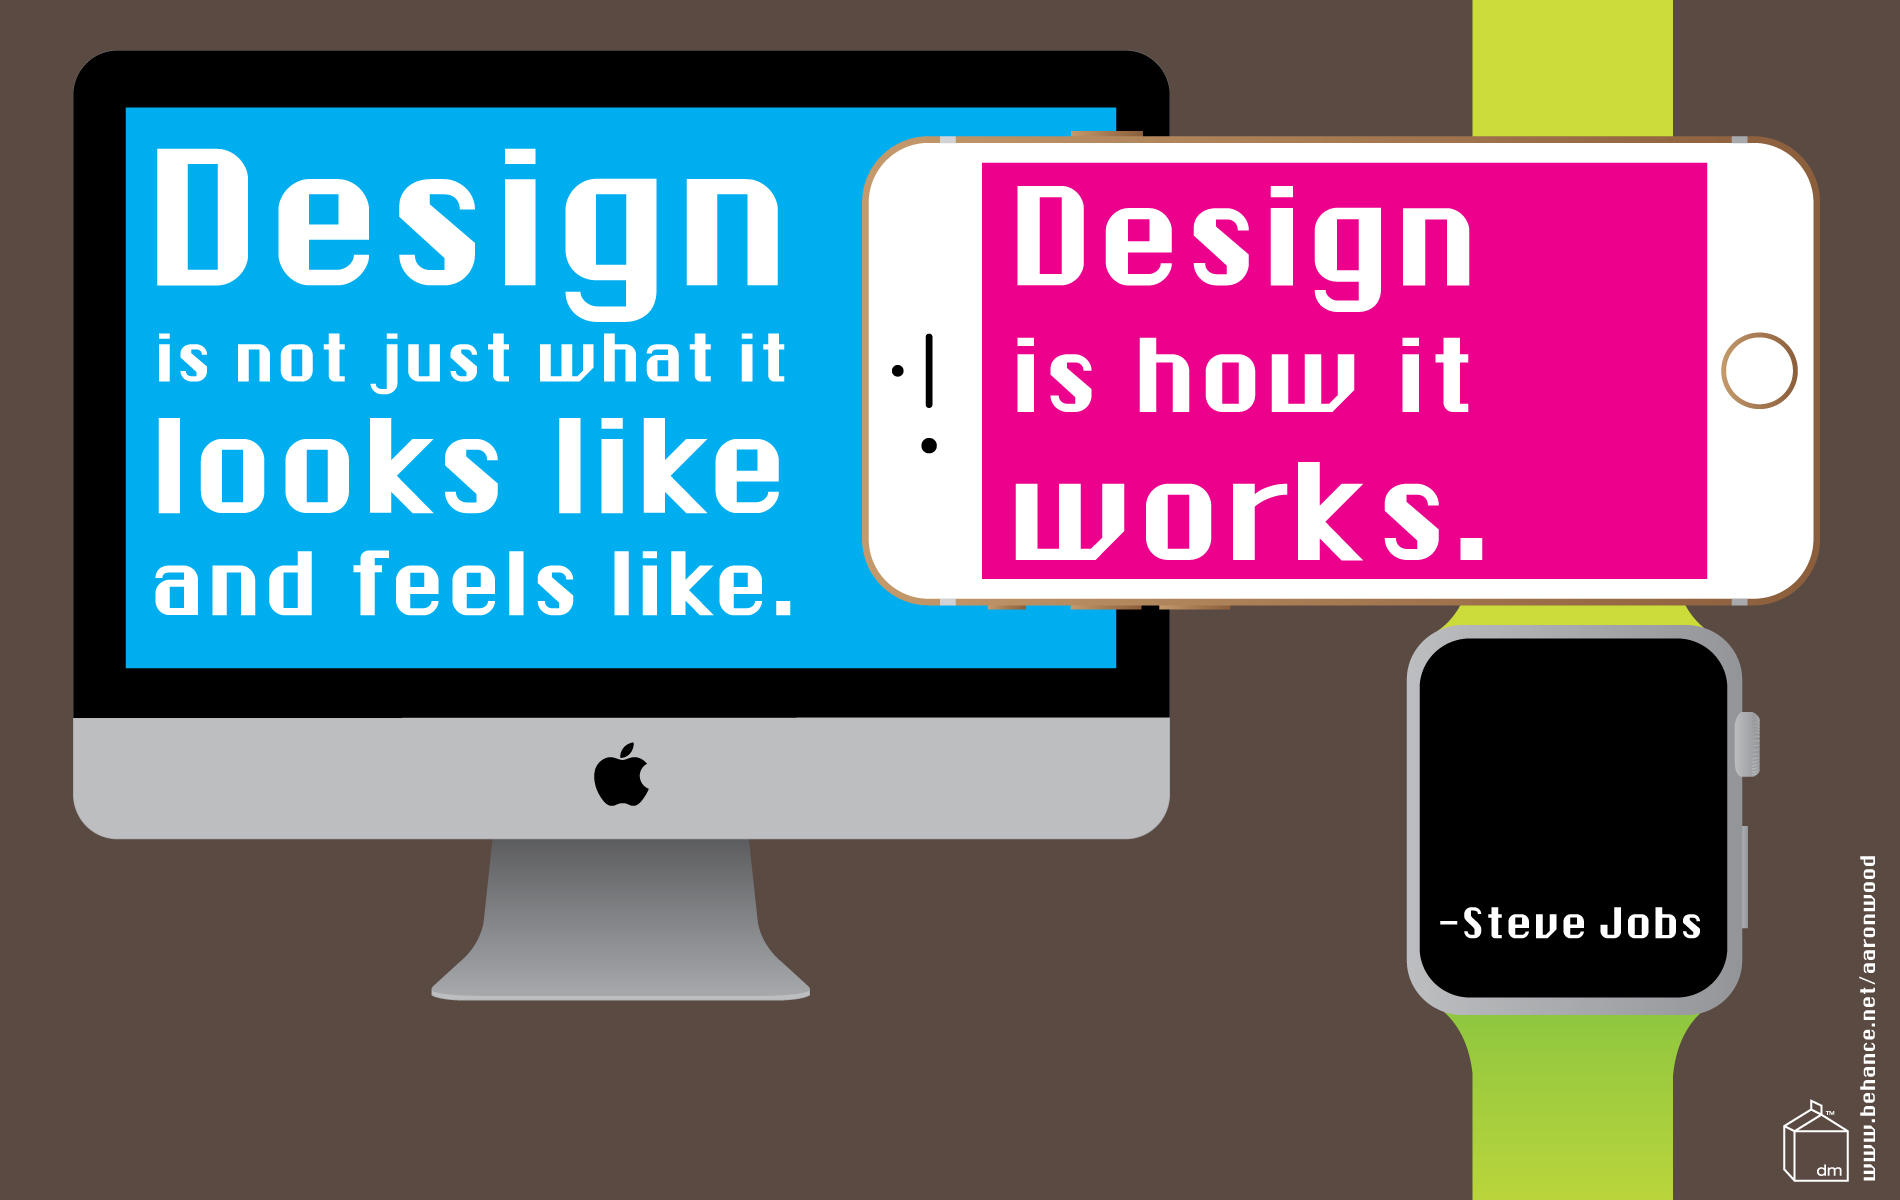 Steve Jobs Inspiring Quote: Design Is How it Works - Design Milk